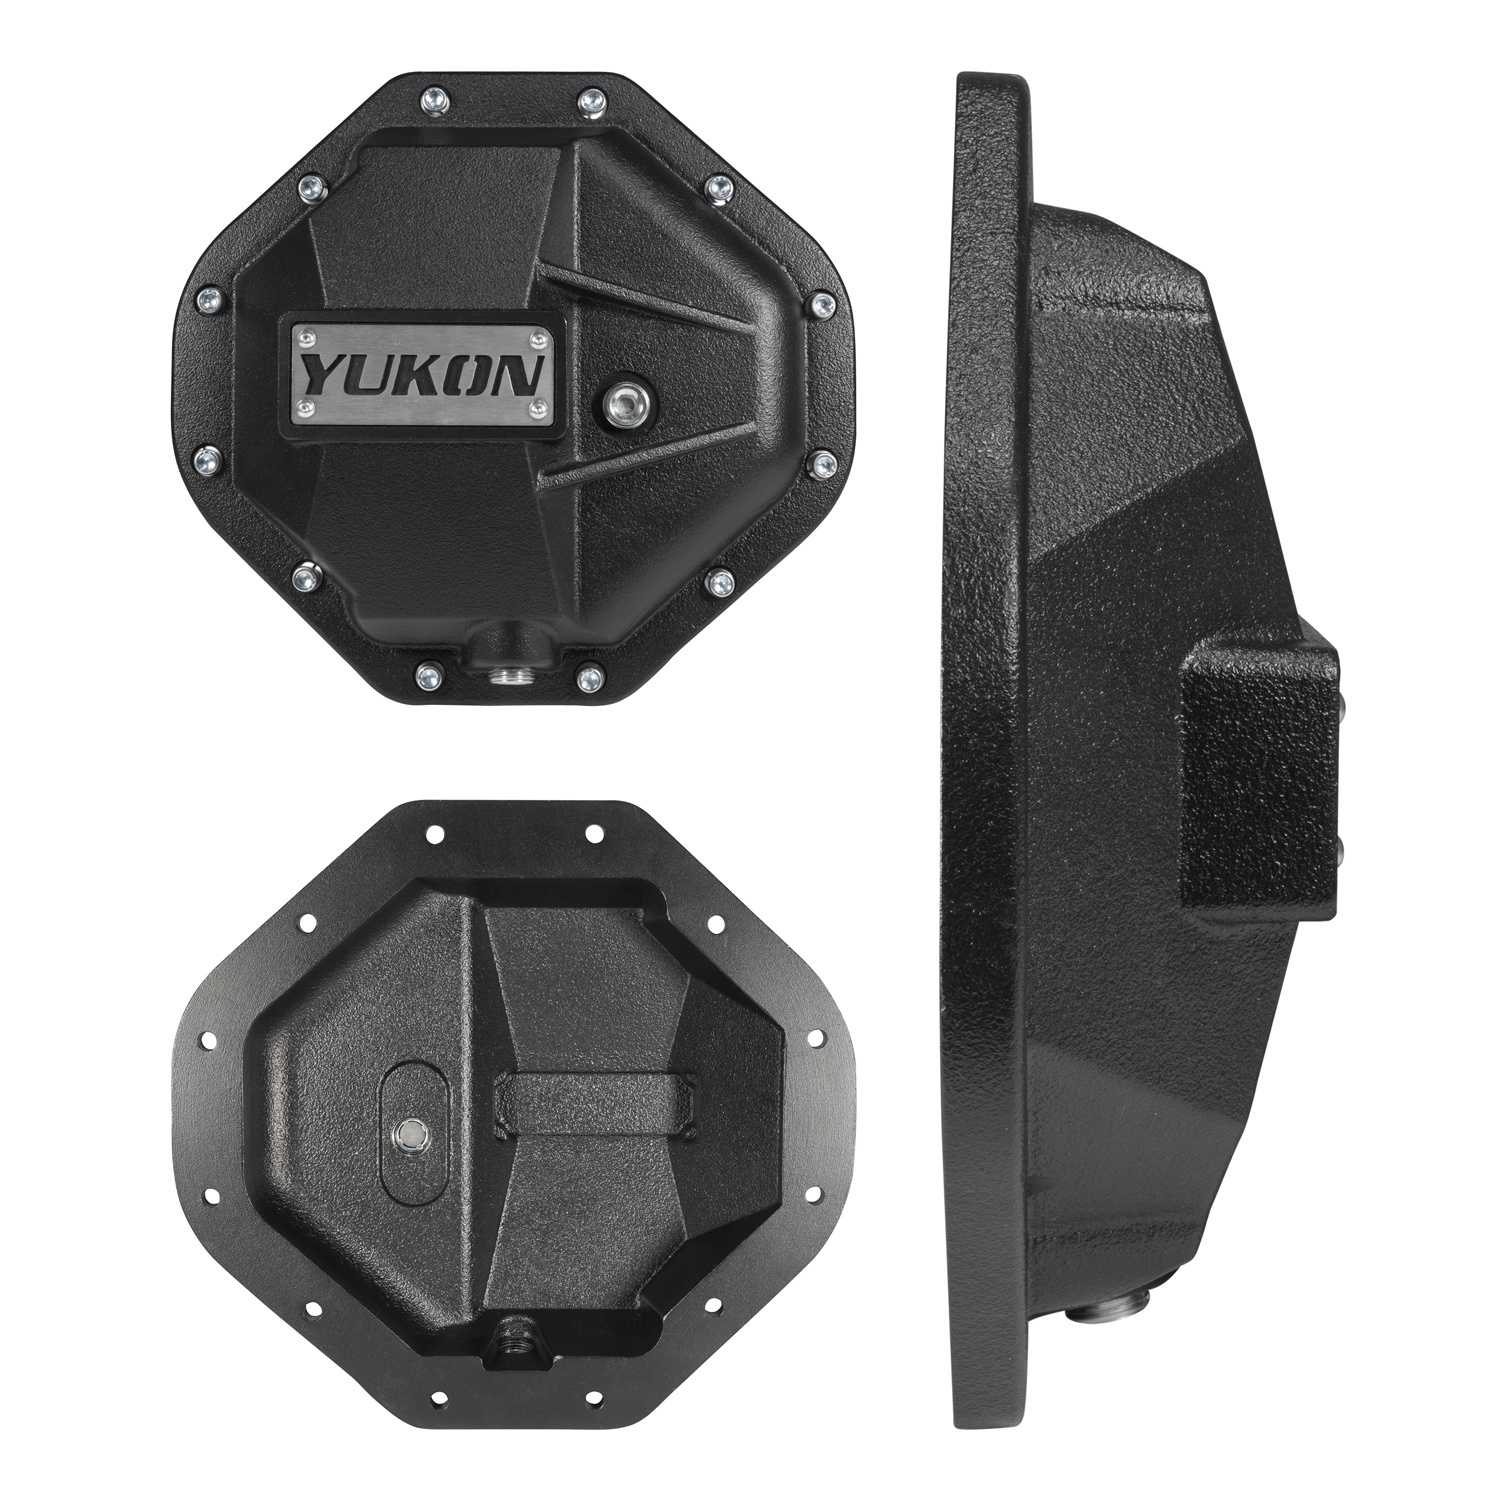 YHCC-C9.25 | Yukon Gear & Axle